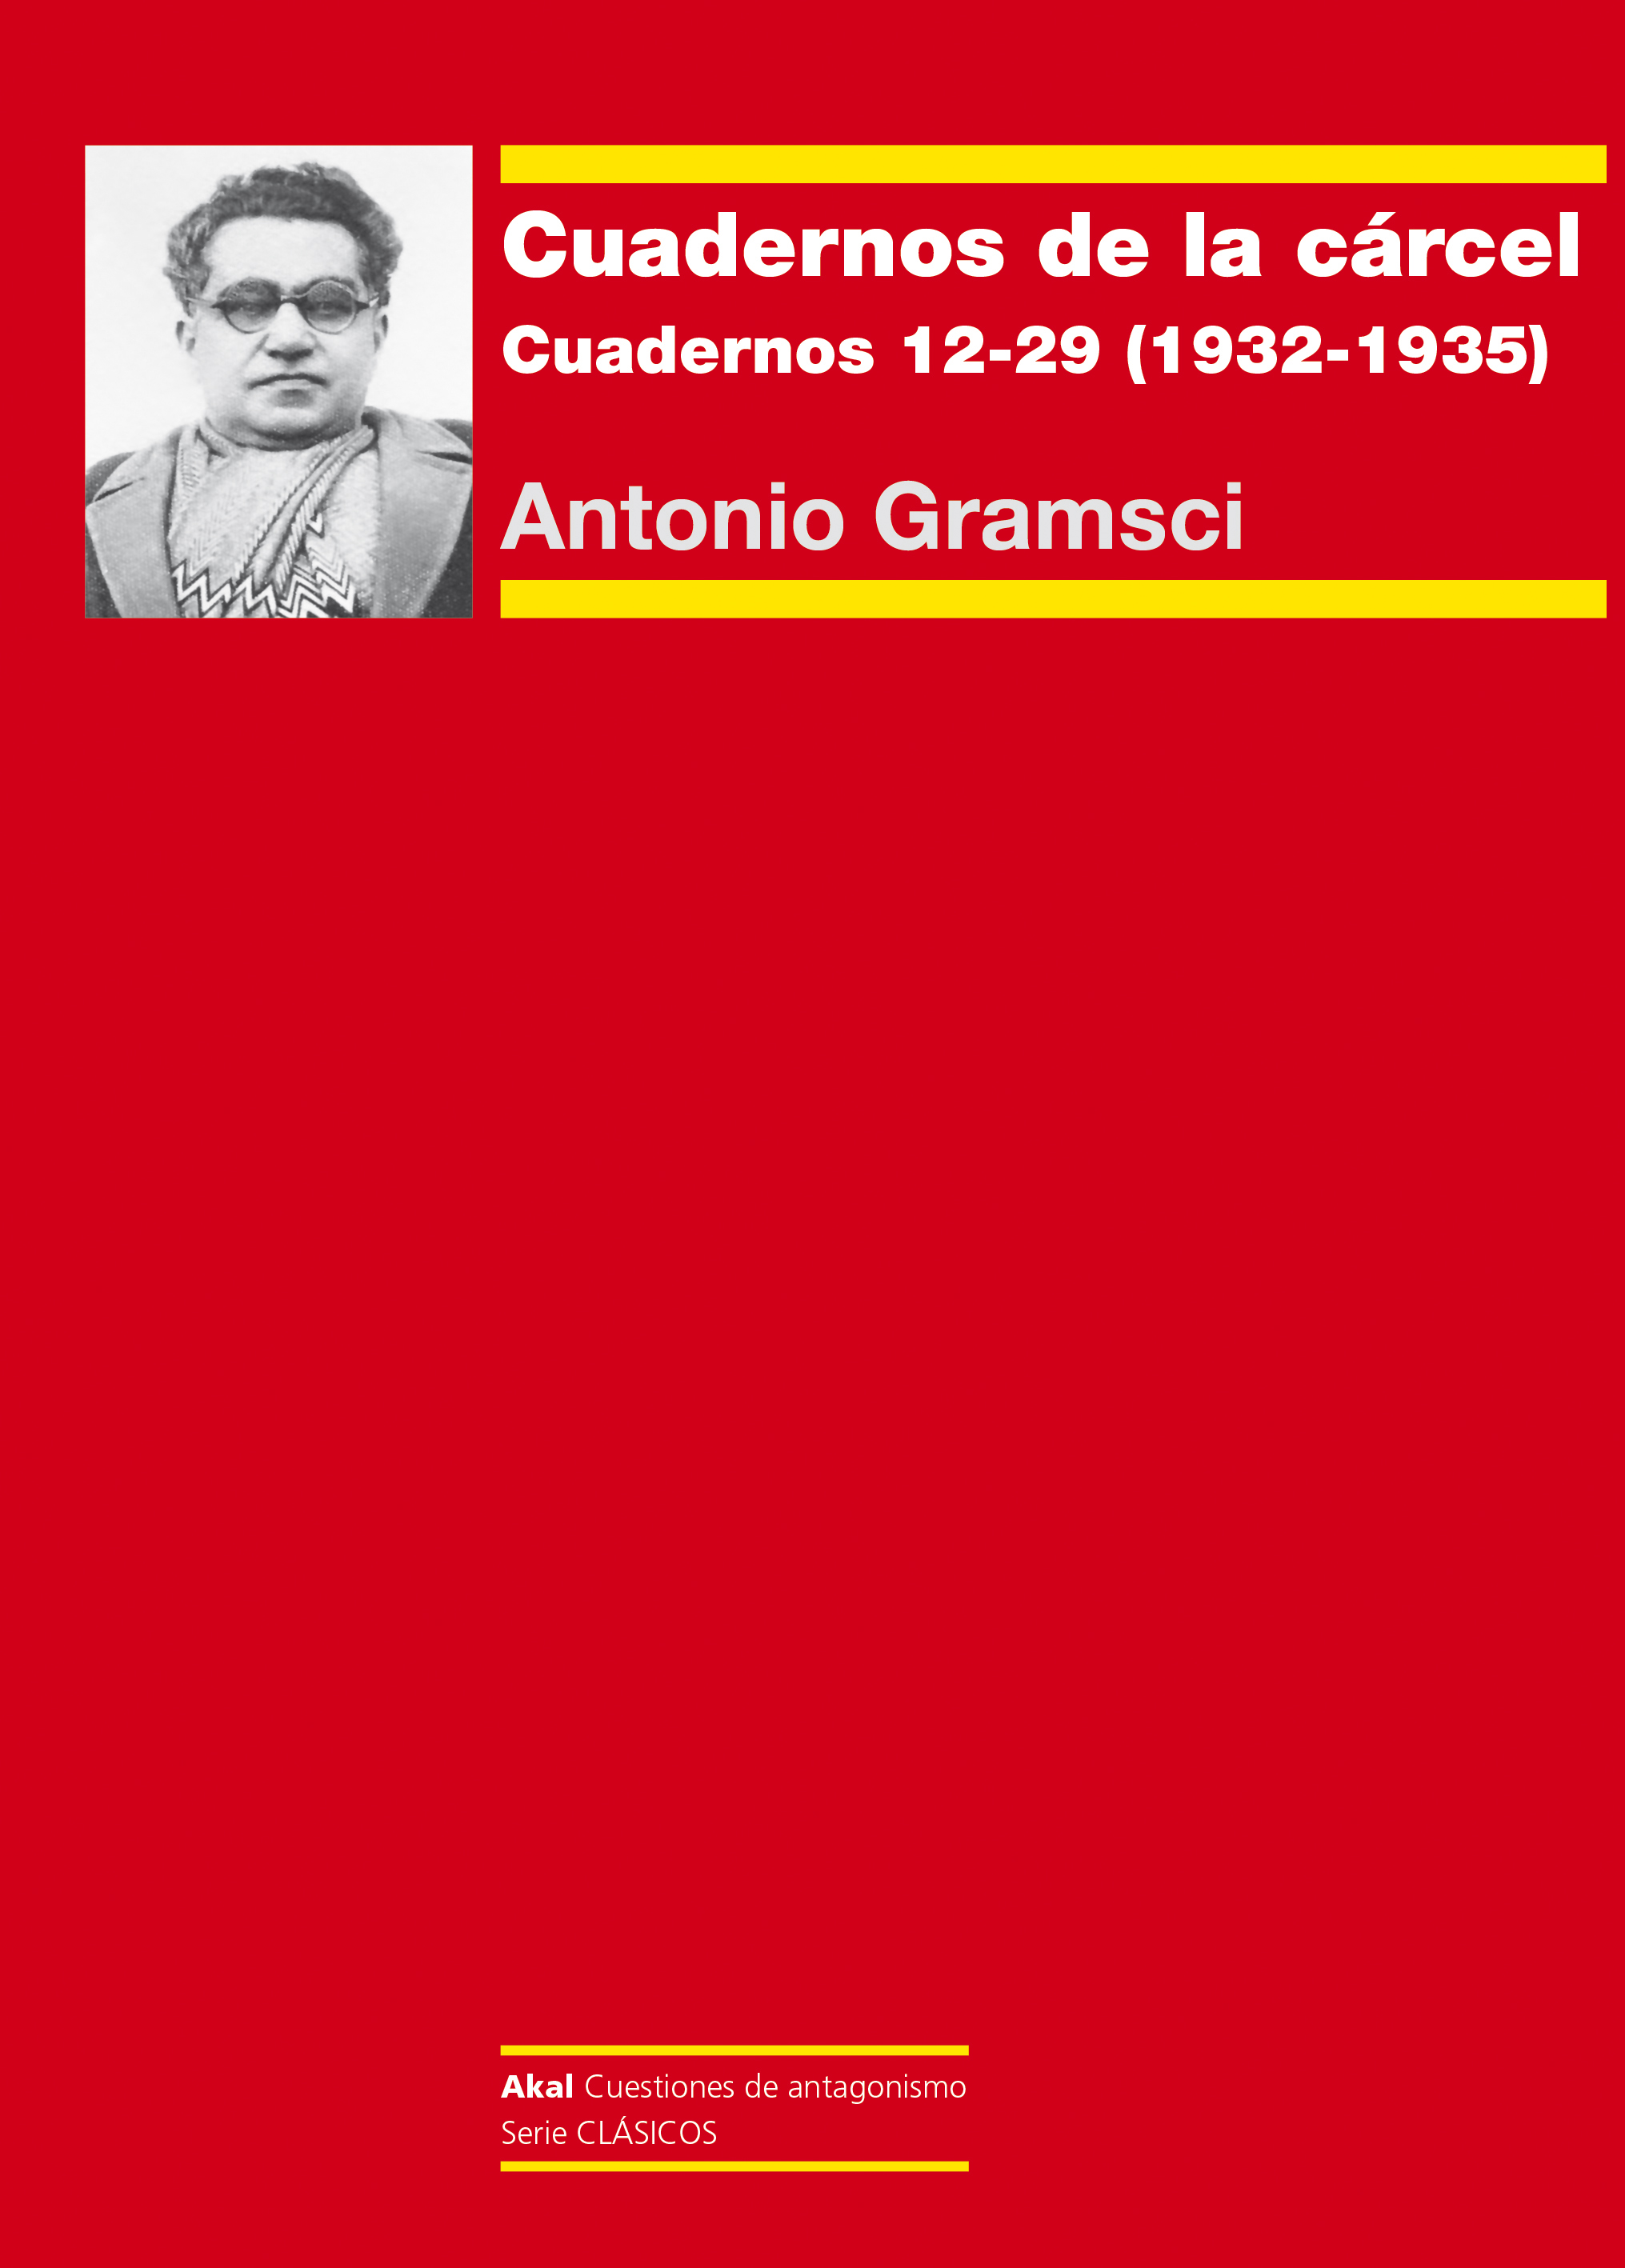 CUADERNOS DE LA CÁRCEL 3 - Antonio Gramsci